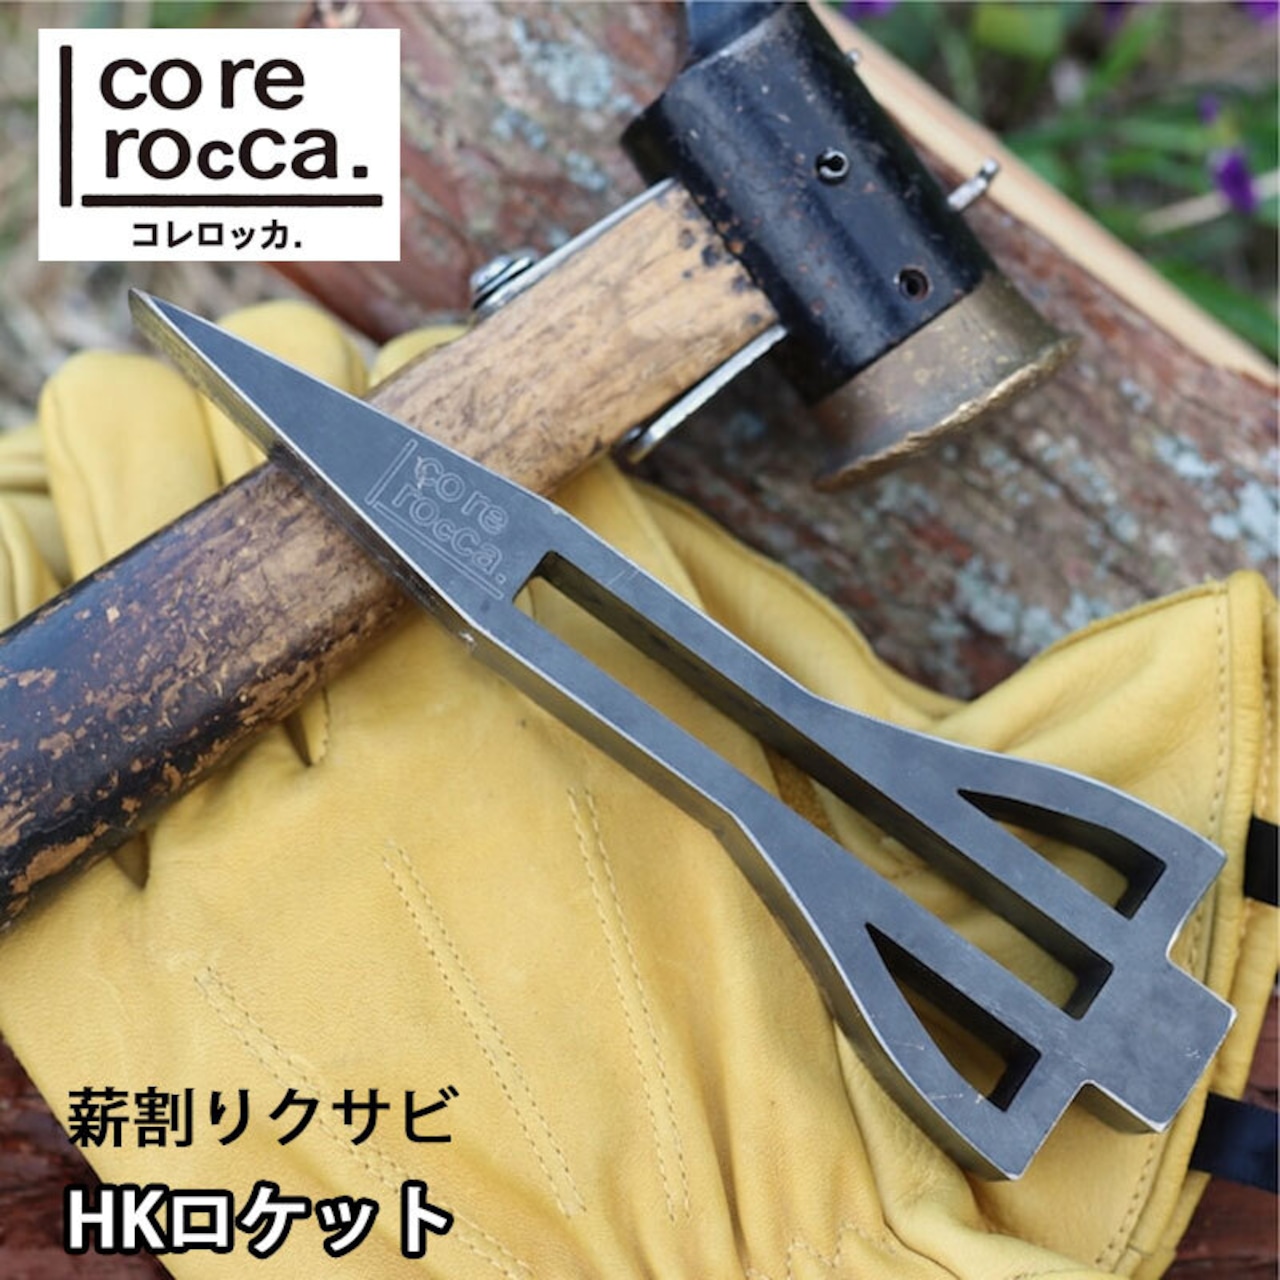 corerocca コレロッカ 薪割りクサビ HKロケット